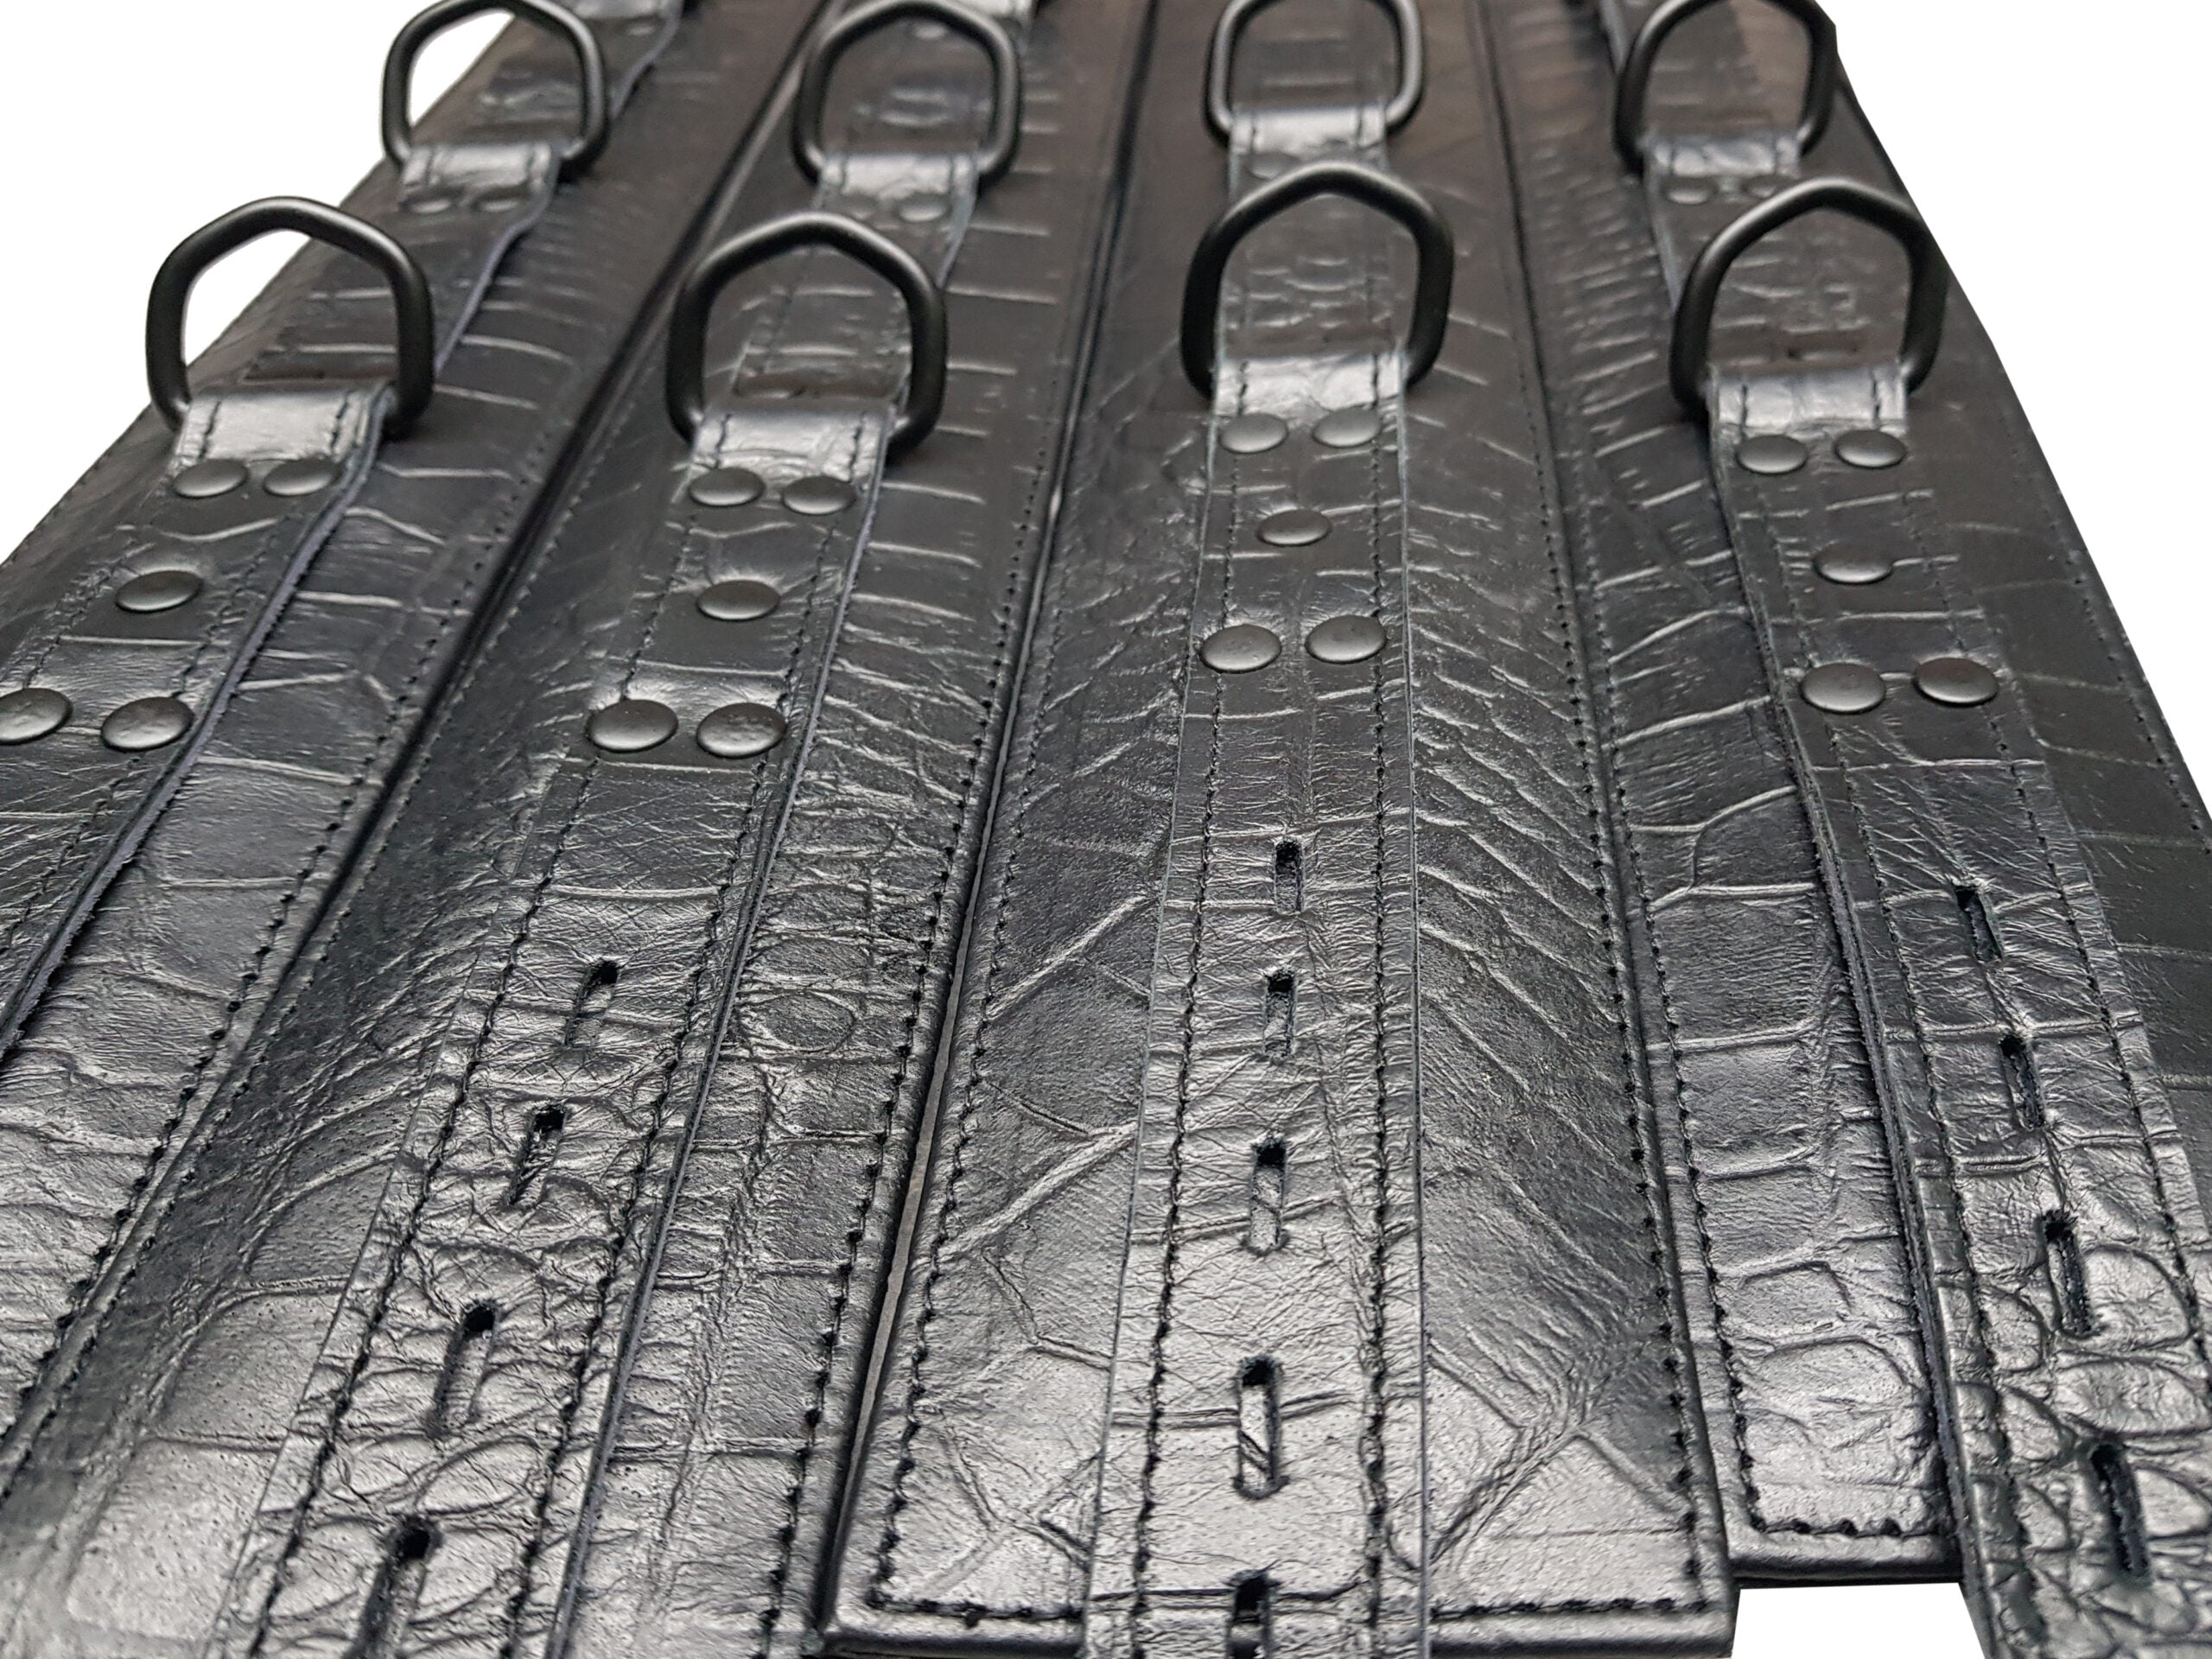 Unisex 7 Pieces Black Crocodile Print Leather Heavy Duty Bondage Restraints BDSM